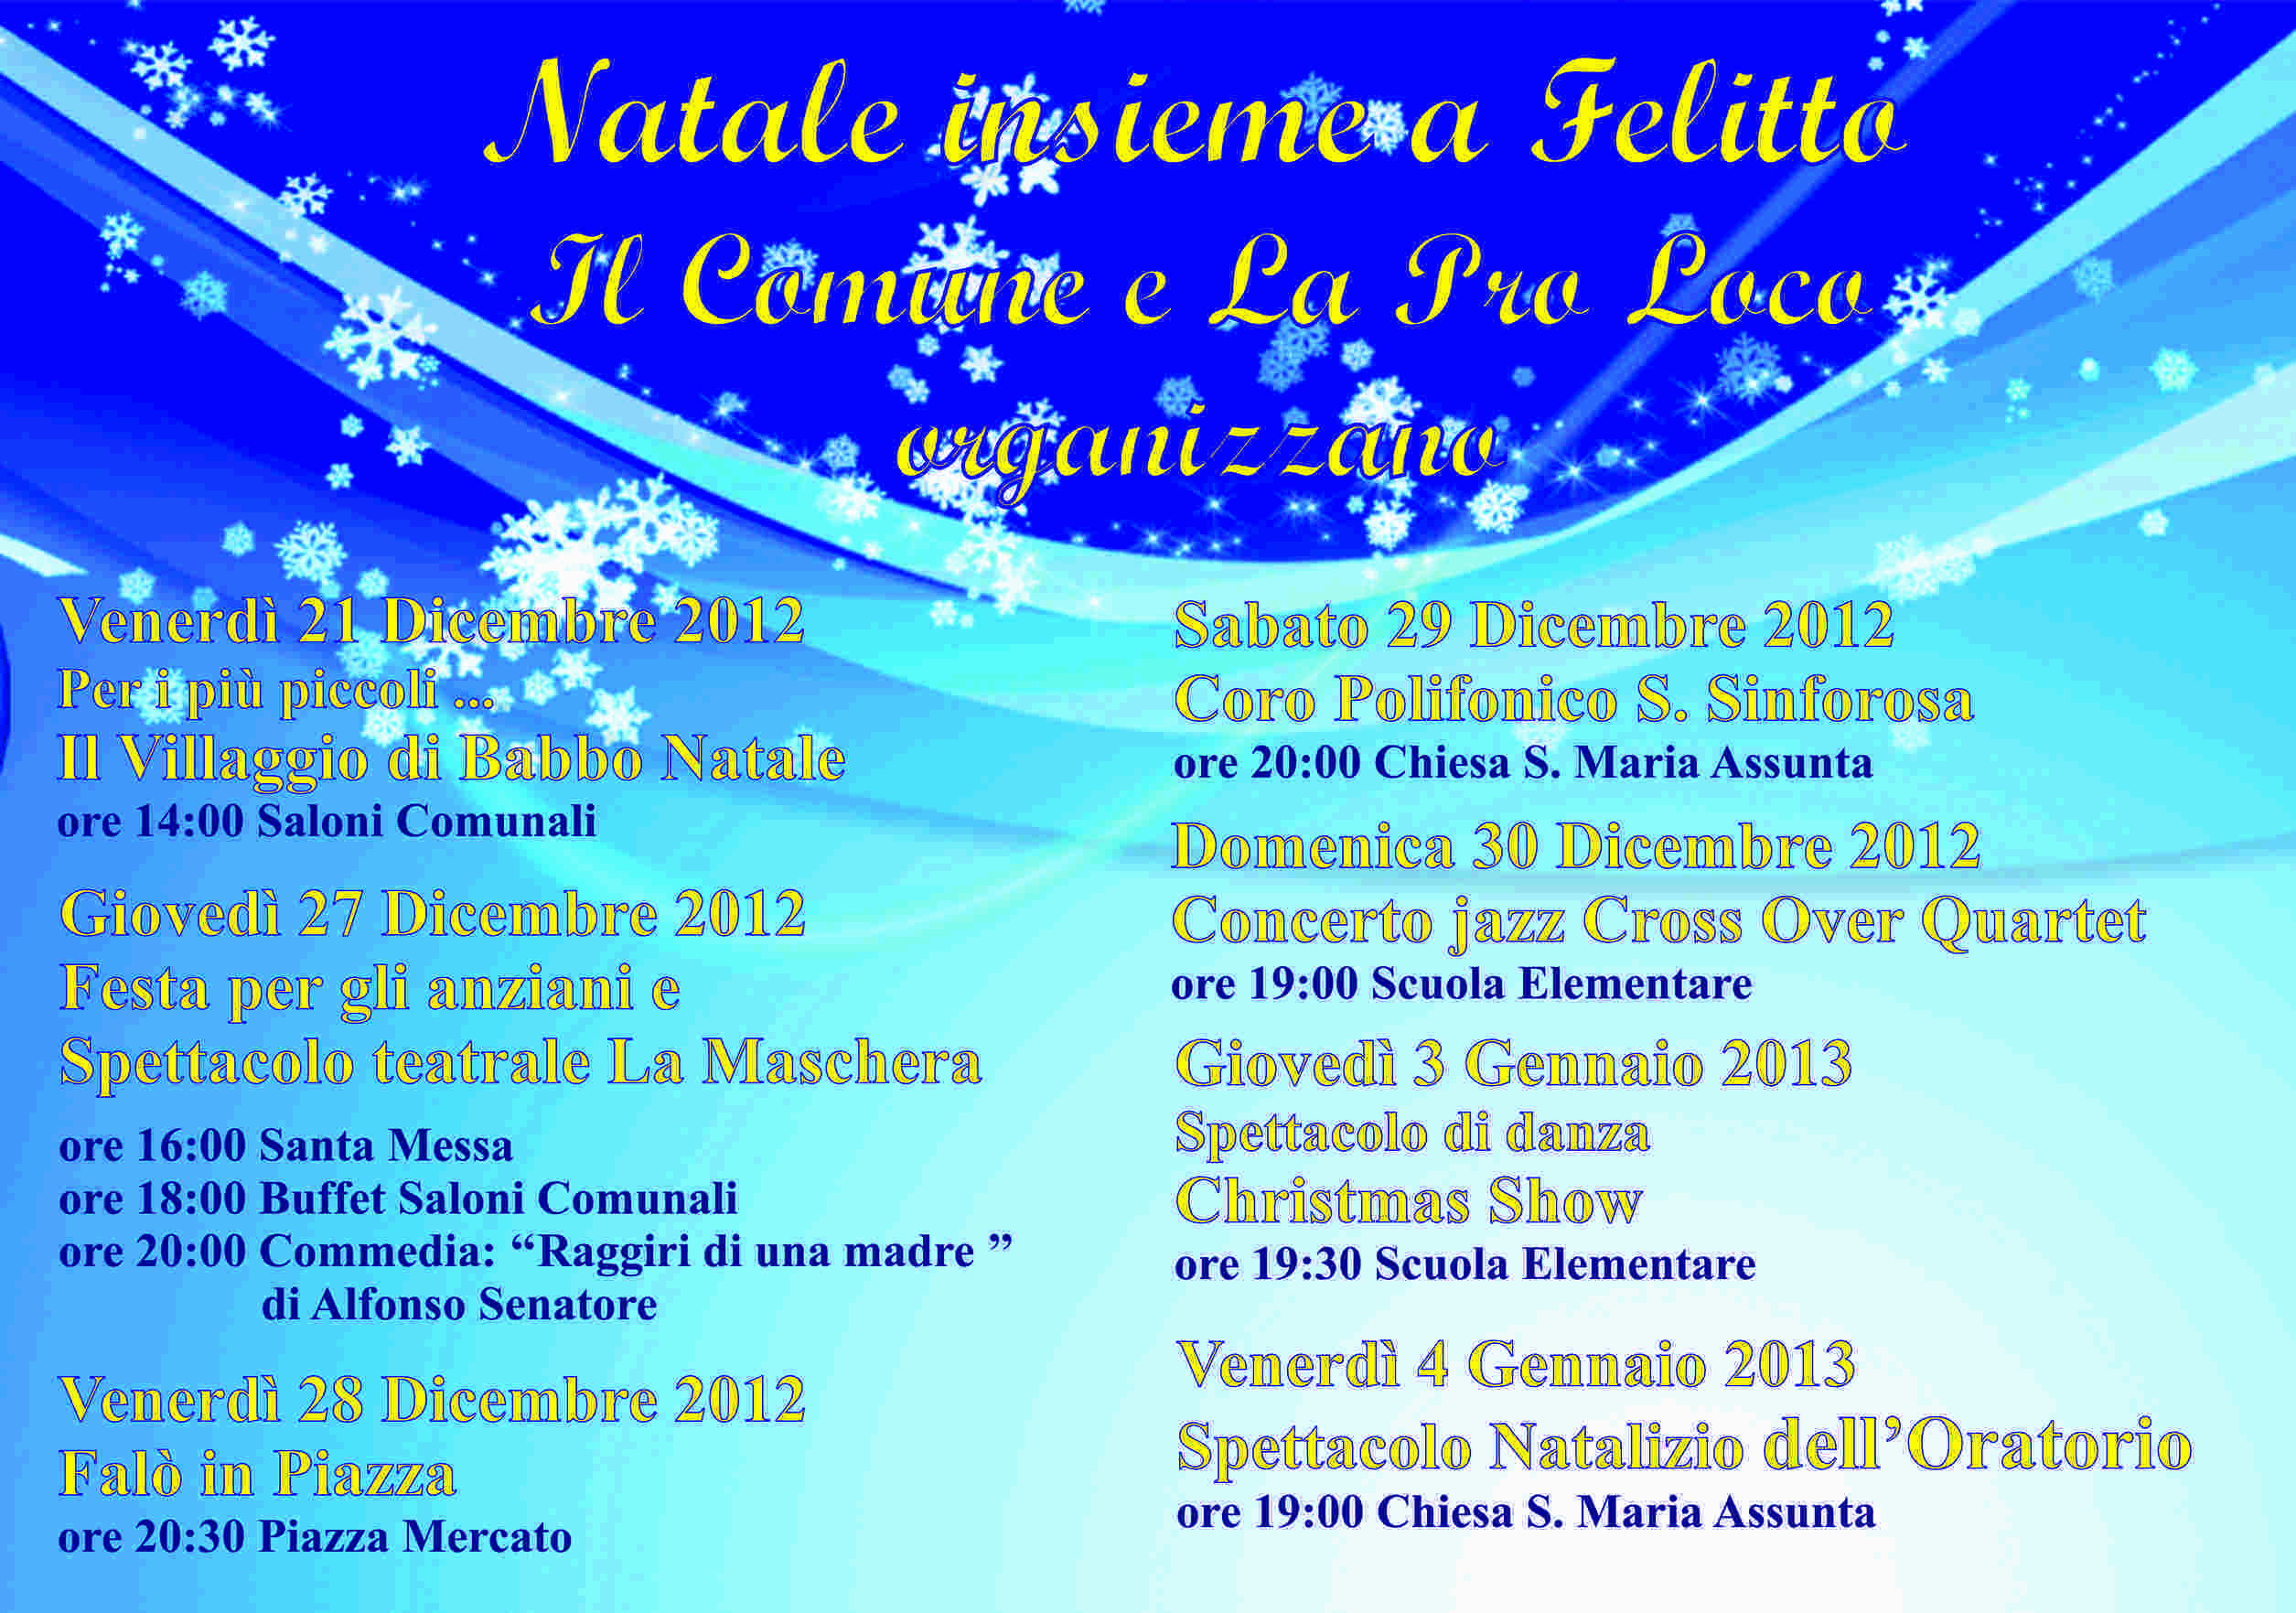 Natale Insieme a Felitto 2012 Programma Attività